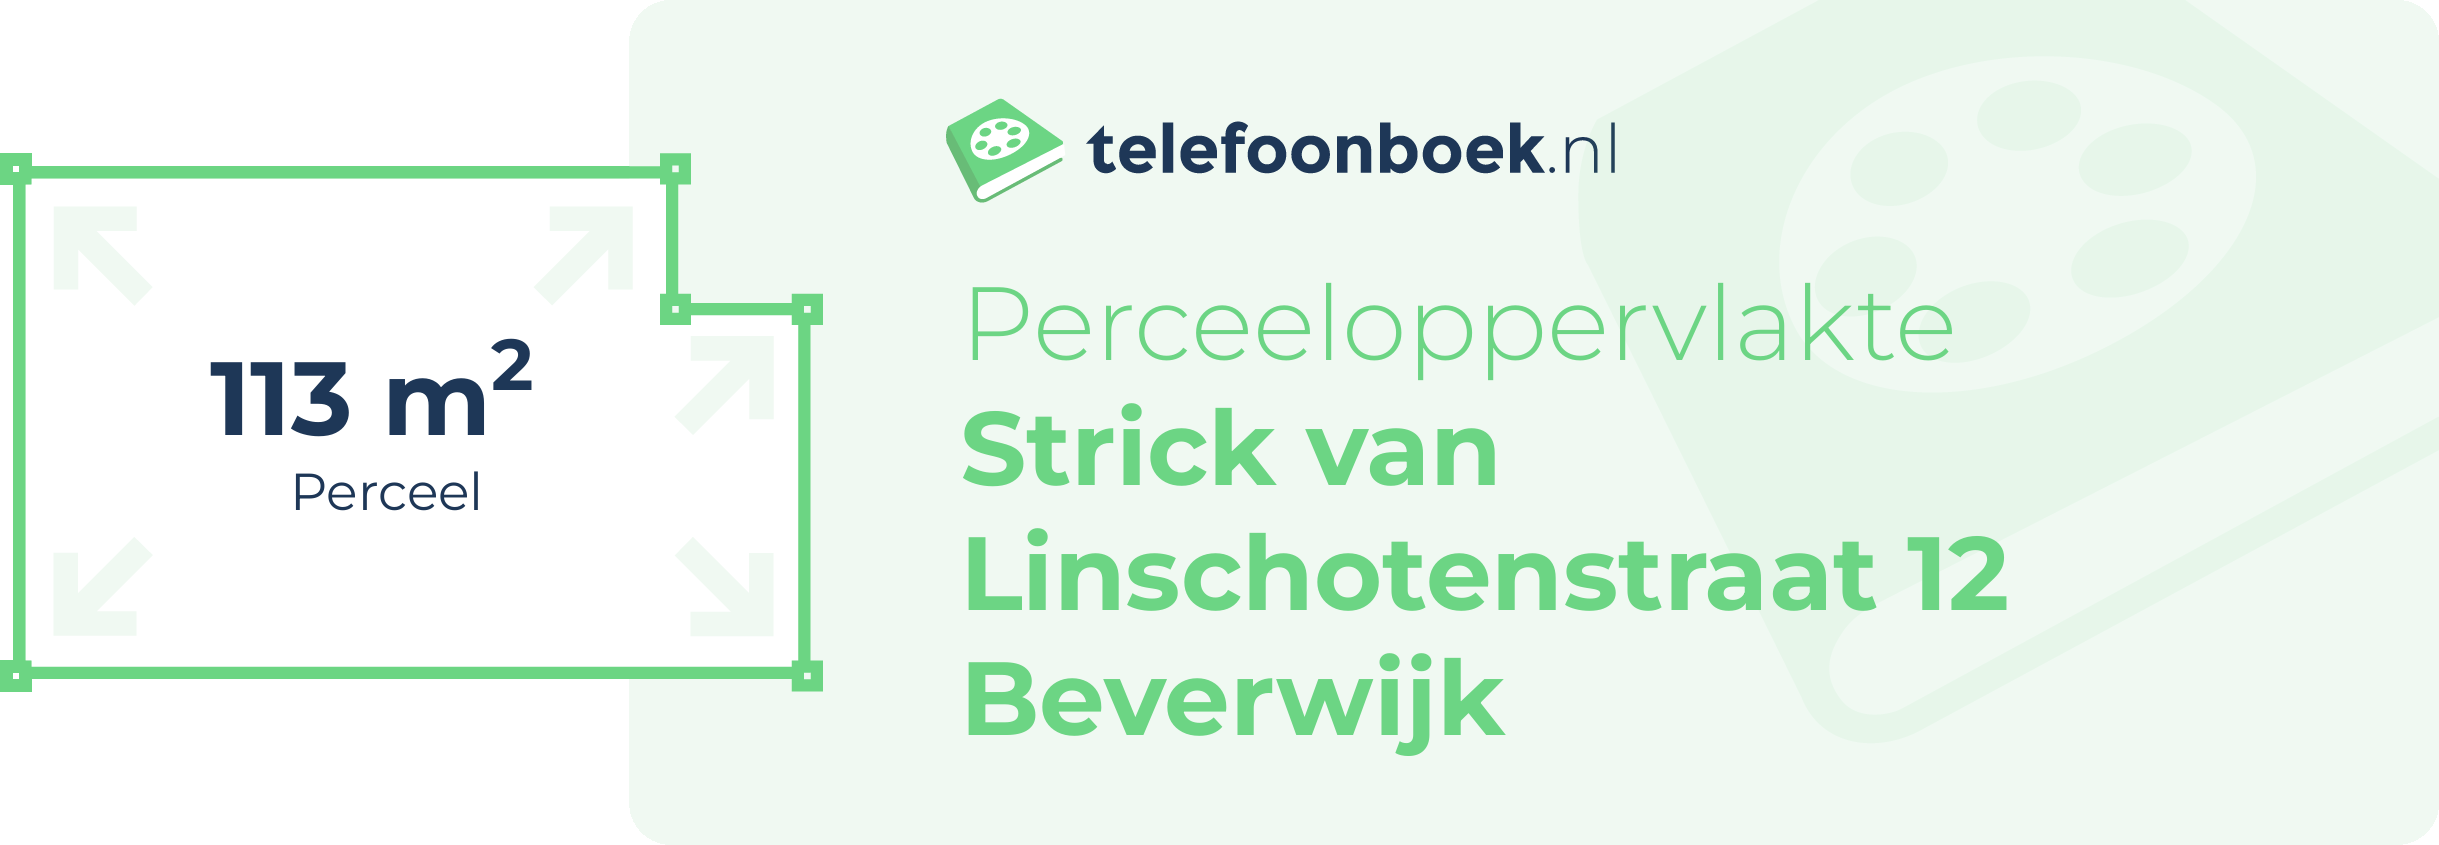 Perceeloppervlakte Strick Van Linschotenstraat 12 Beverwijk